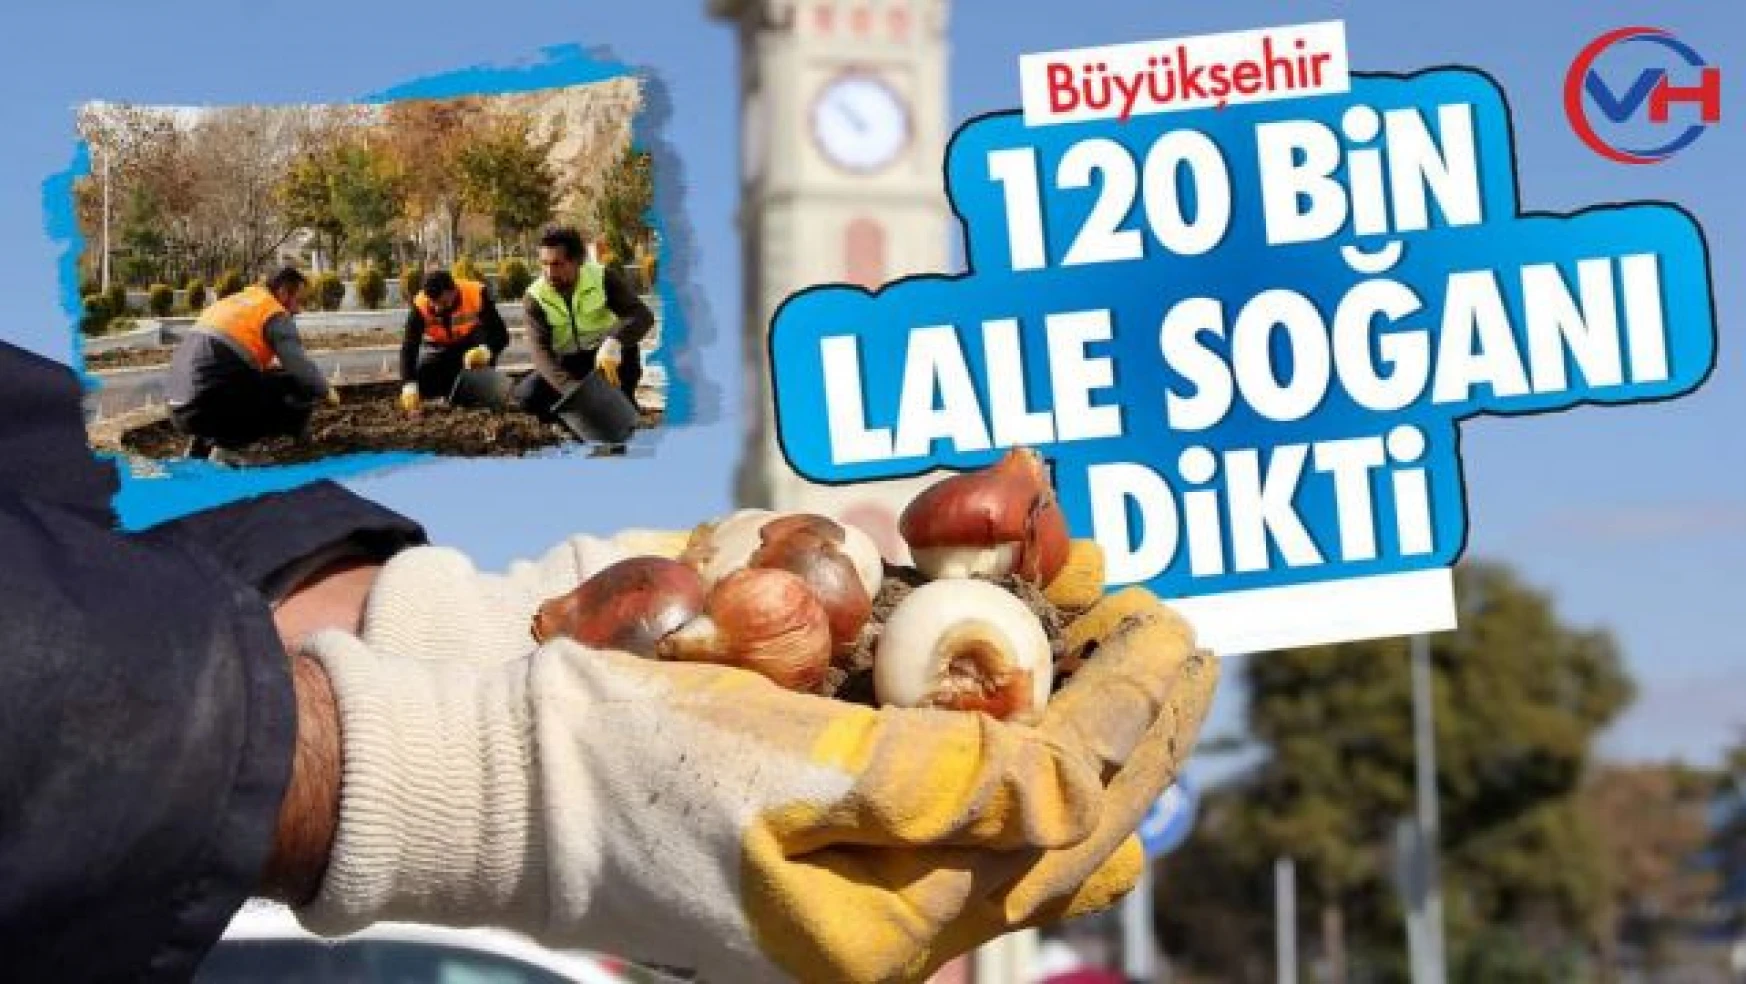 Büyükşehir Belediyemiz, 120 bin Lale Soğanı Dikti